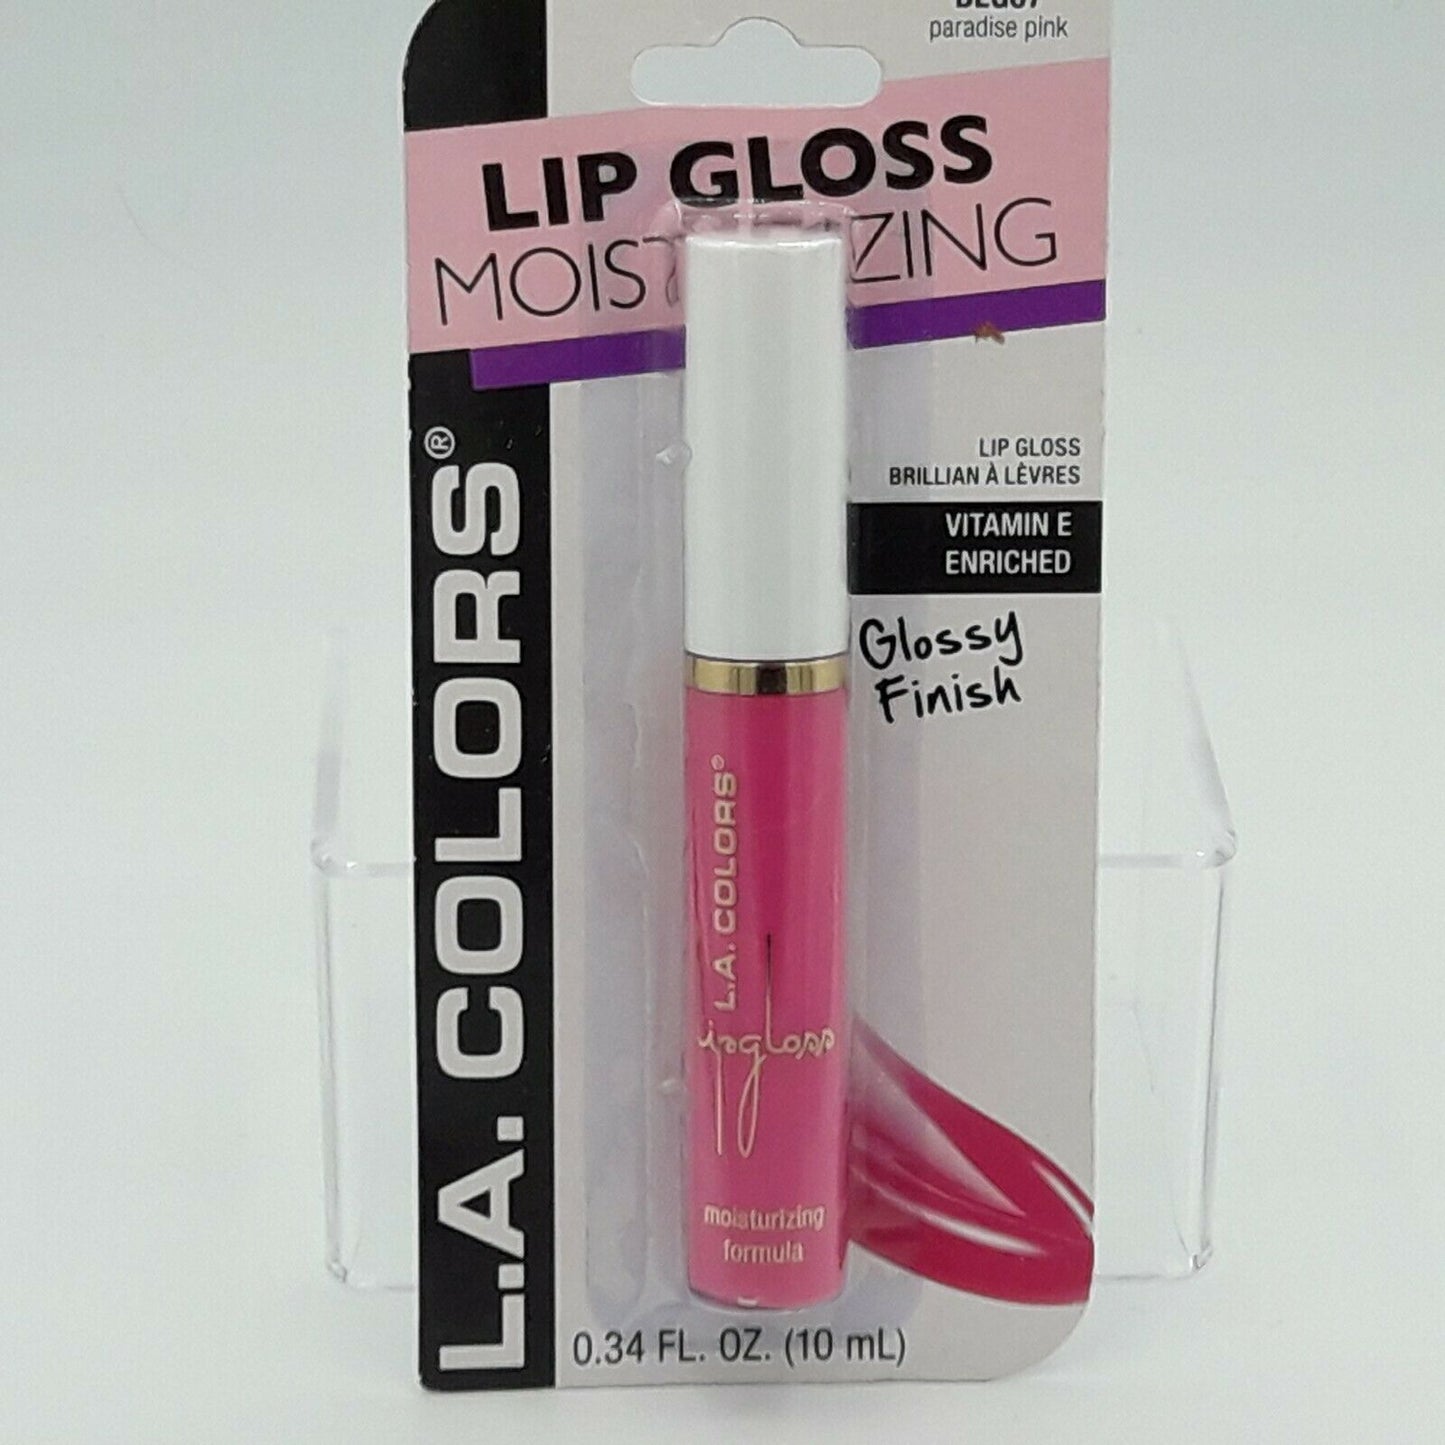 L.A Lip Gloss- Moisturizing Glossy Finish